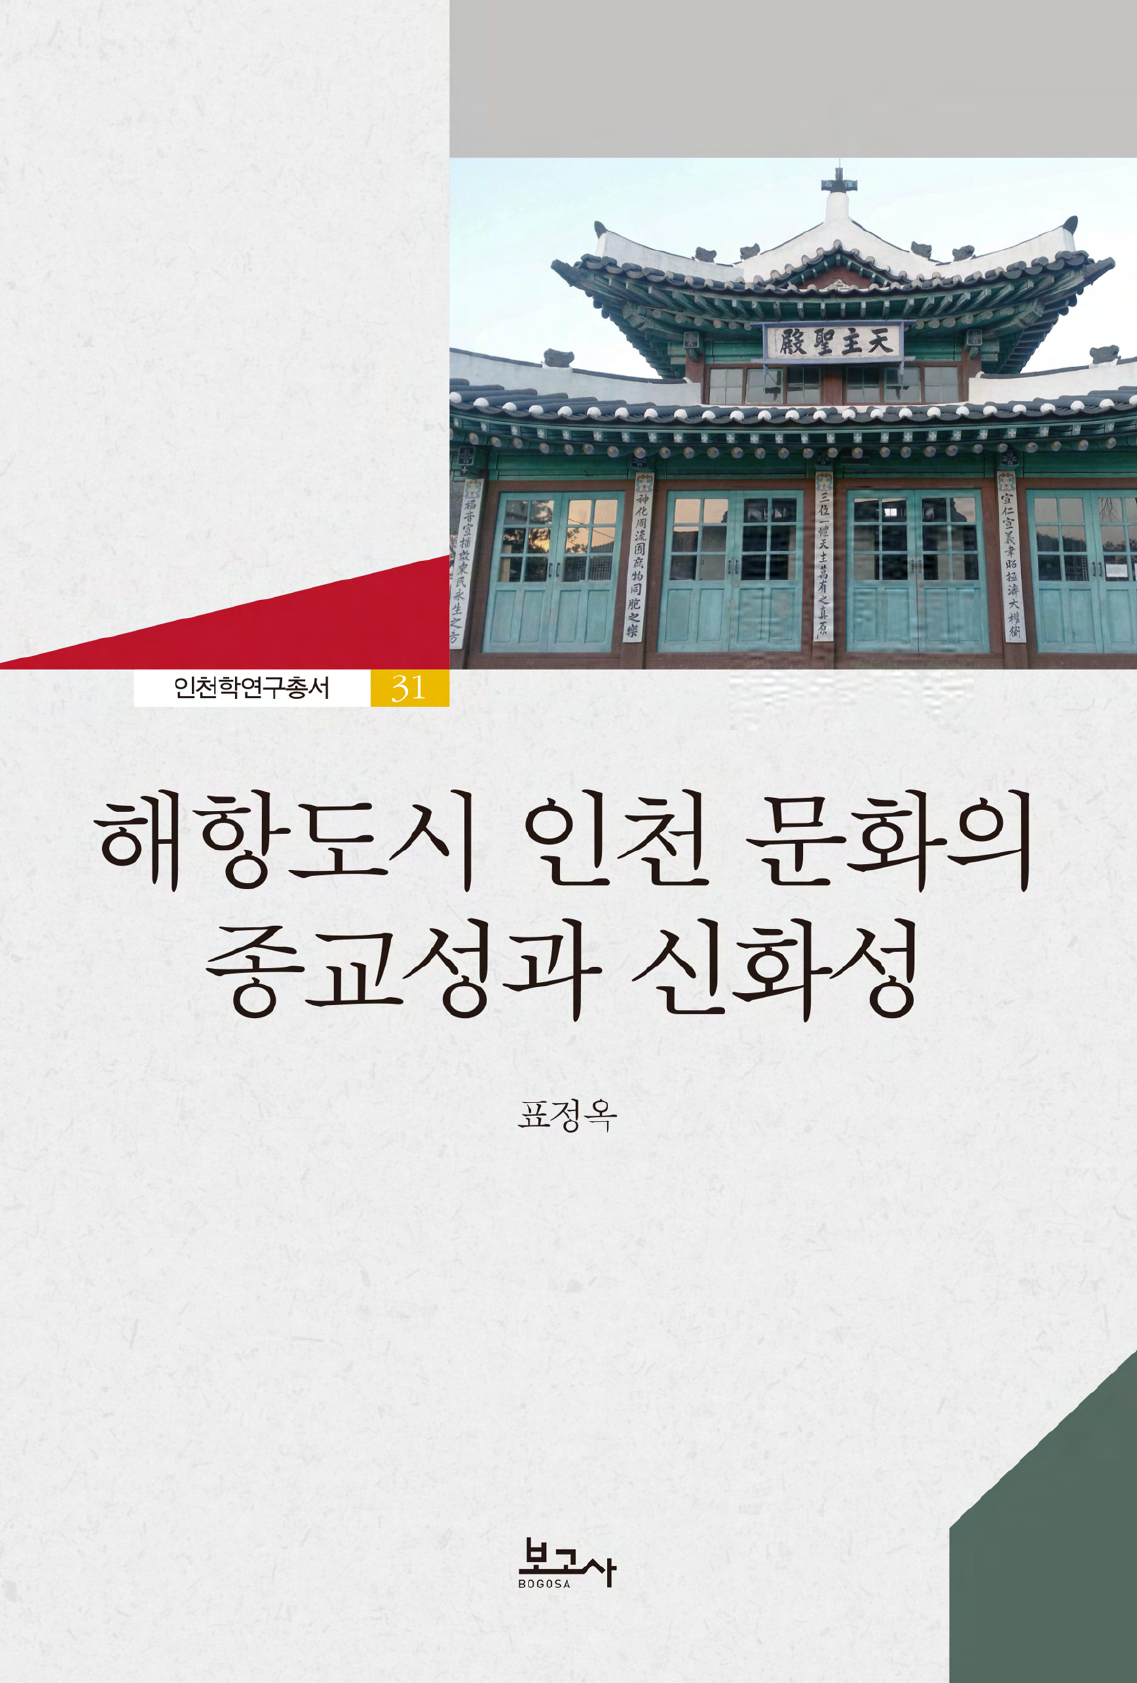 해항도시 인천 문화의 종교성과 신화성